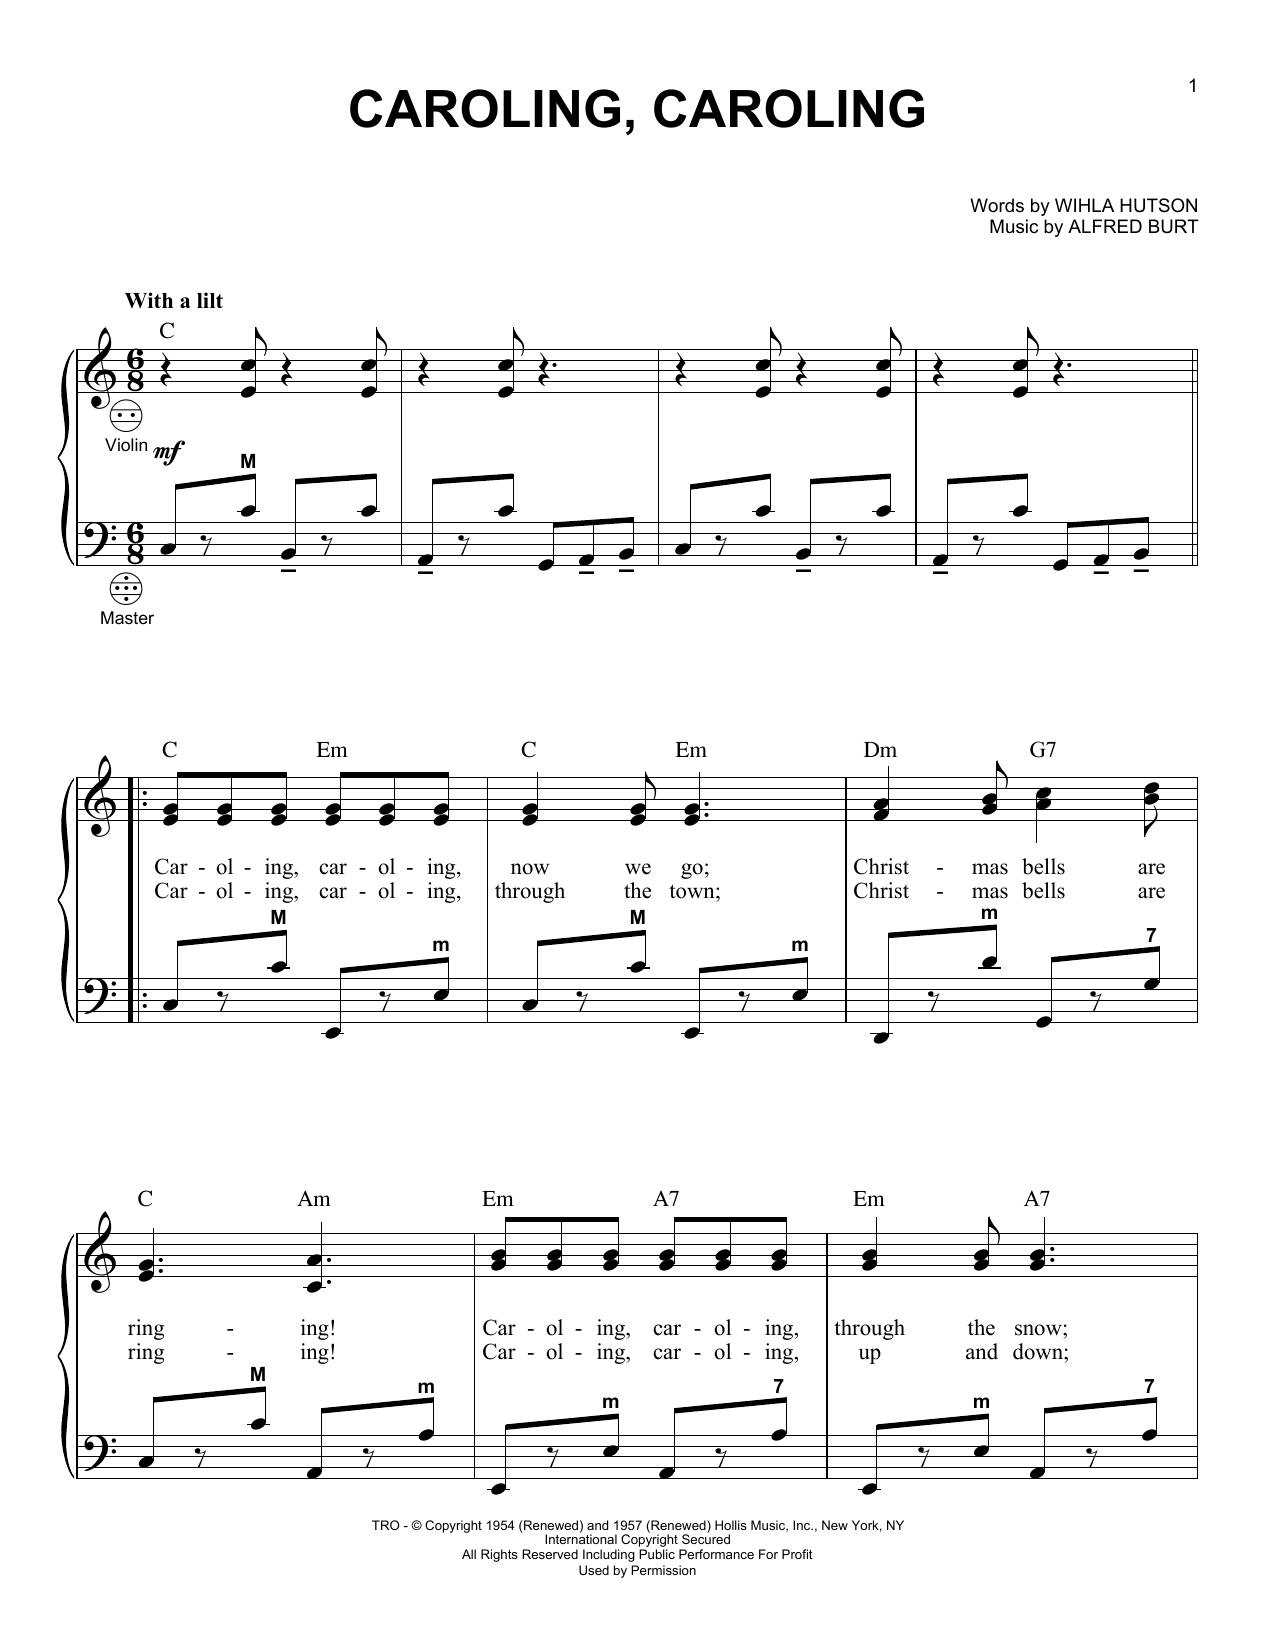 Alfred Burt Caroling, Caroling Sheet Music Notes & Chords for Banjo - Download or Print PDF